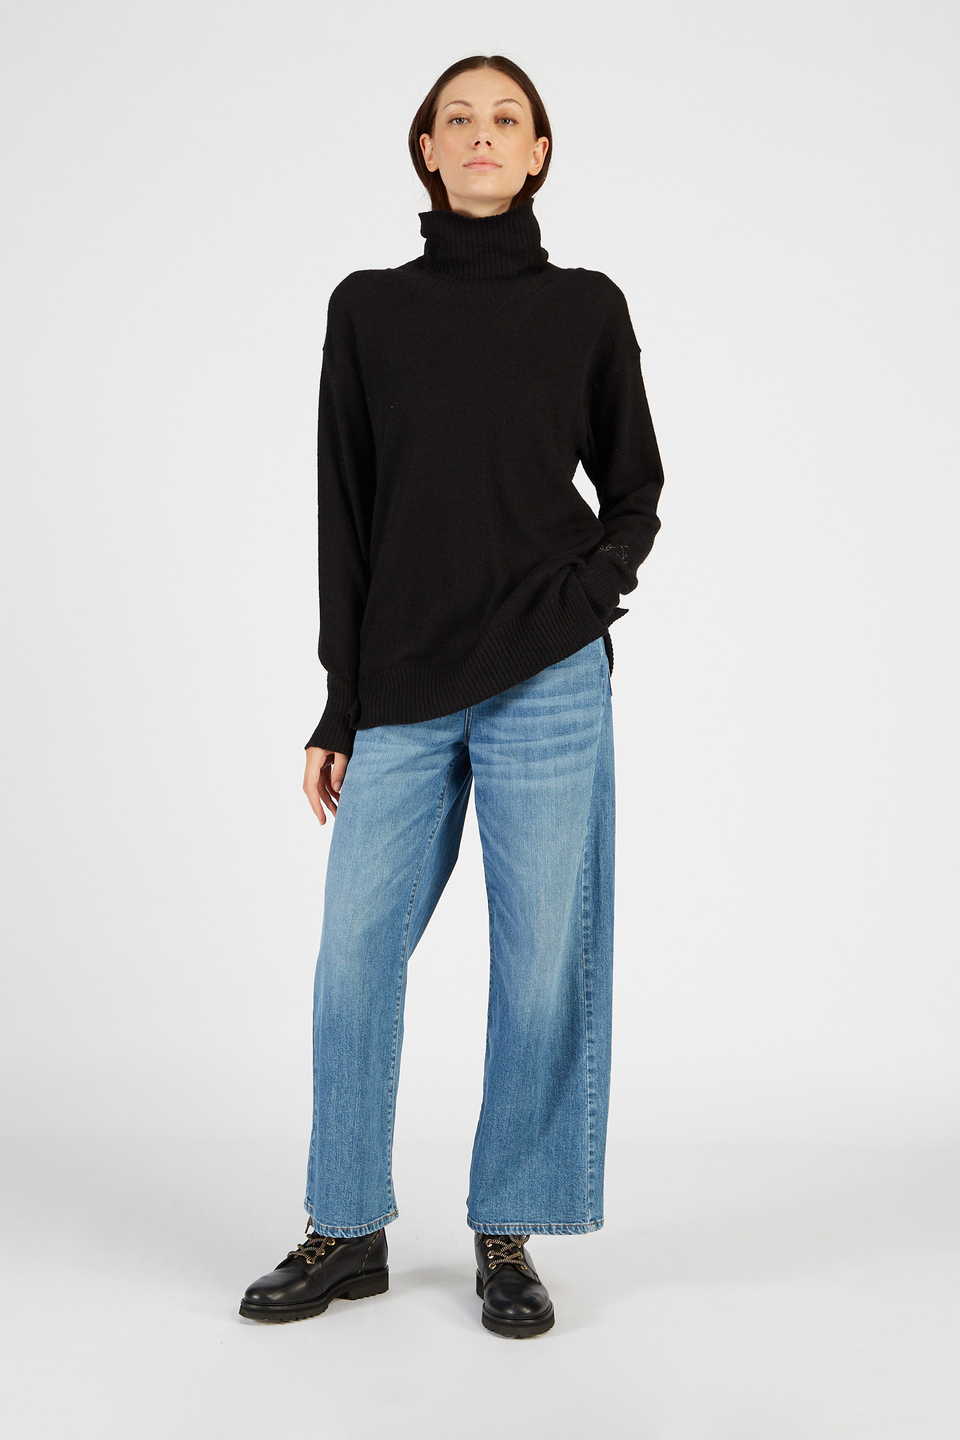 Damen Pullover mit hohem Kragen aus Alpaka mit regulärer Passform | La Martina - Official Online Shop